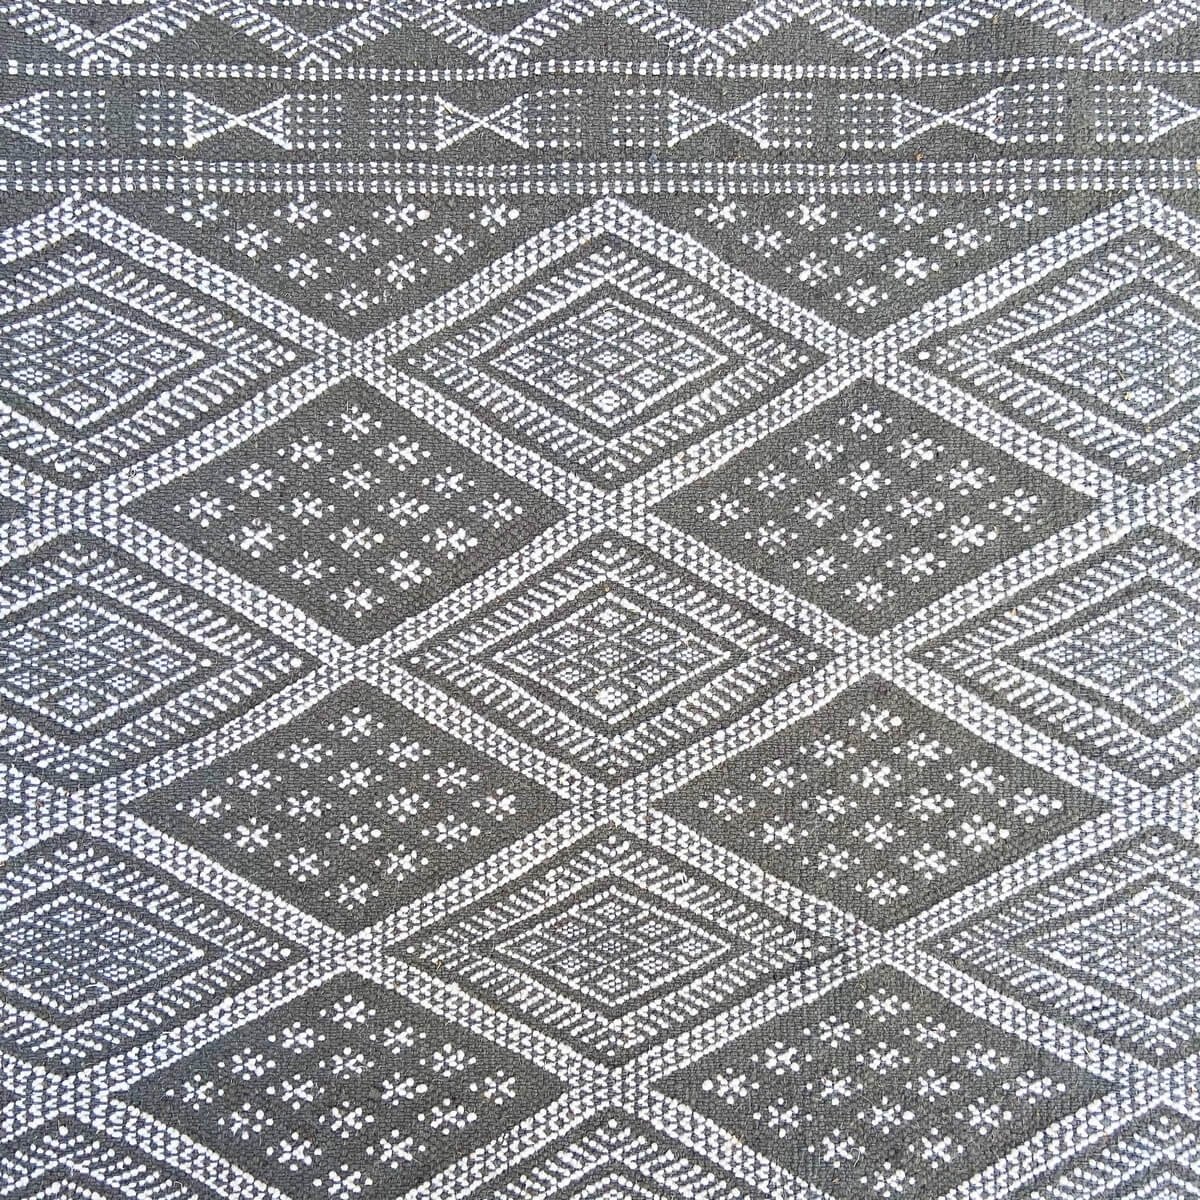 Berber tapijt Groot Tapijt Margoum Damia 167x250 Grijs (Handgeweven, Wol, Tunesië) Tunesisch Margoum Tapijt uit de stad Kairouan